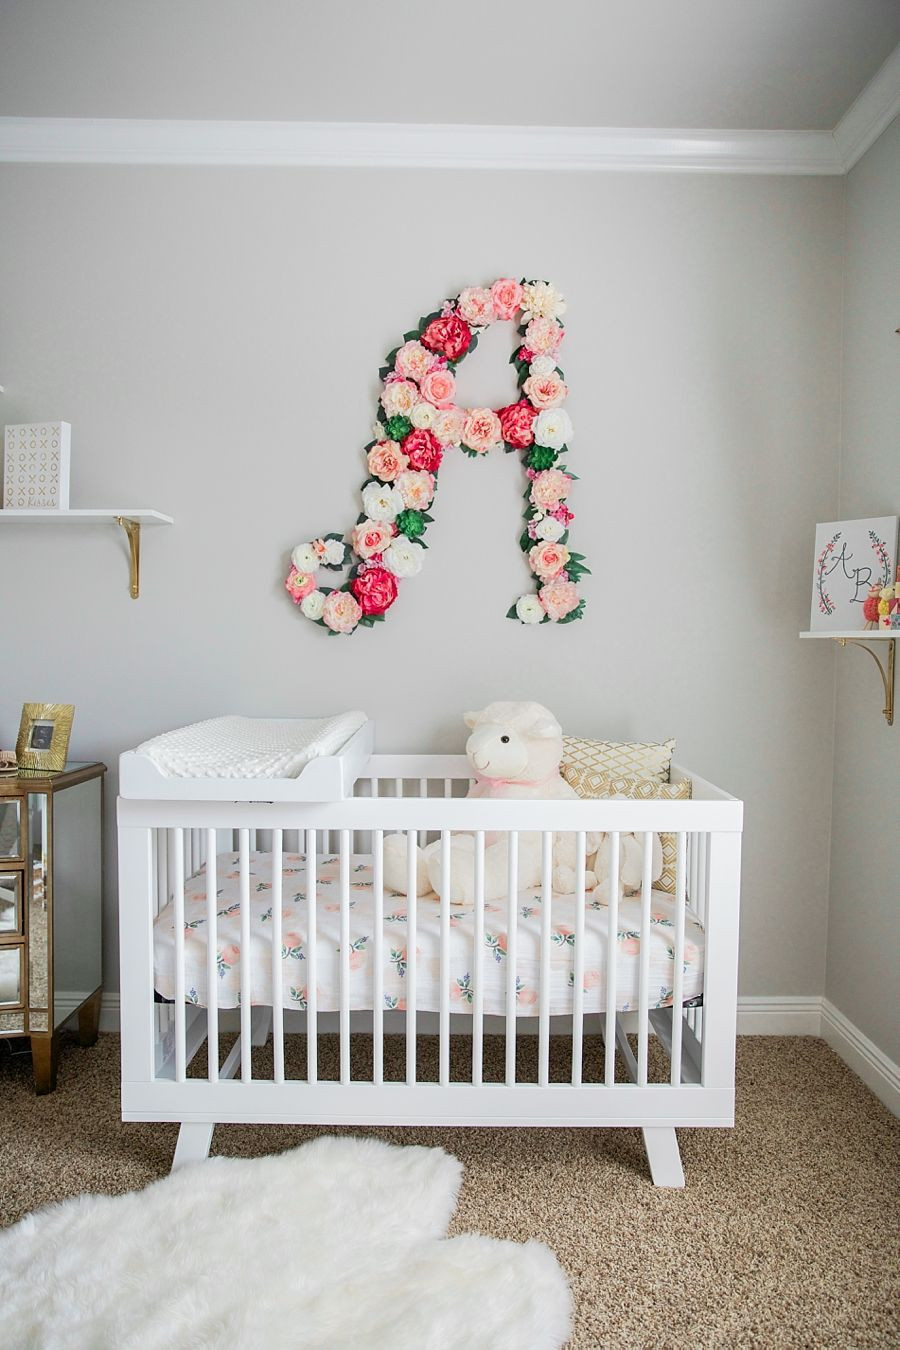 Baby Girl Nursery Wall Decor Ideas
 Baby Bailey’s Nursery